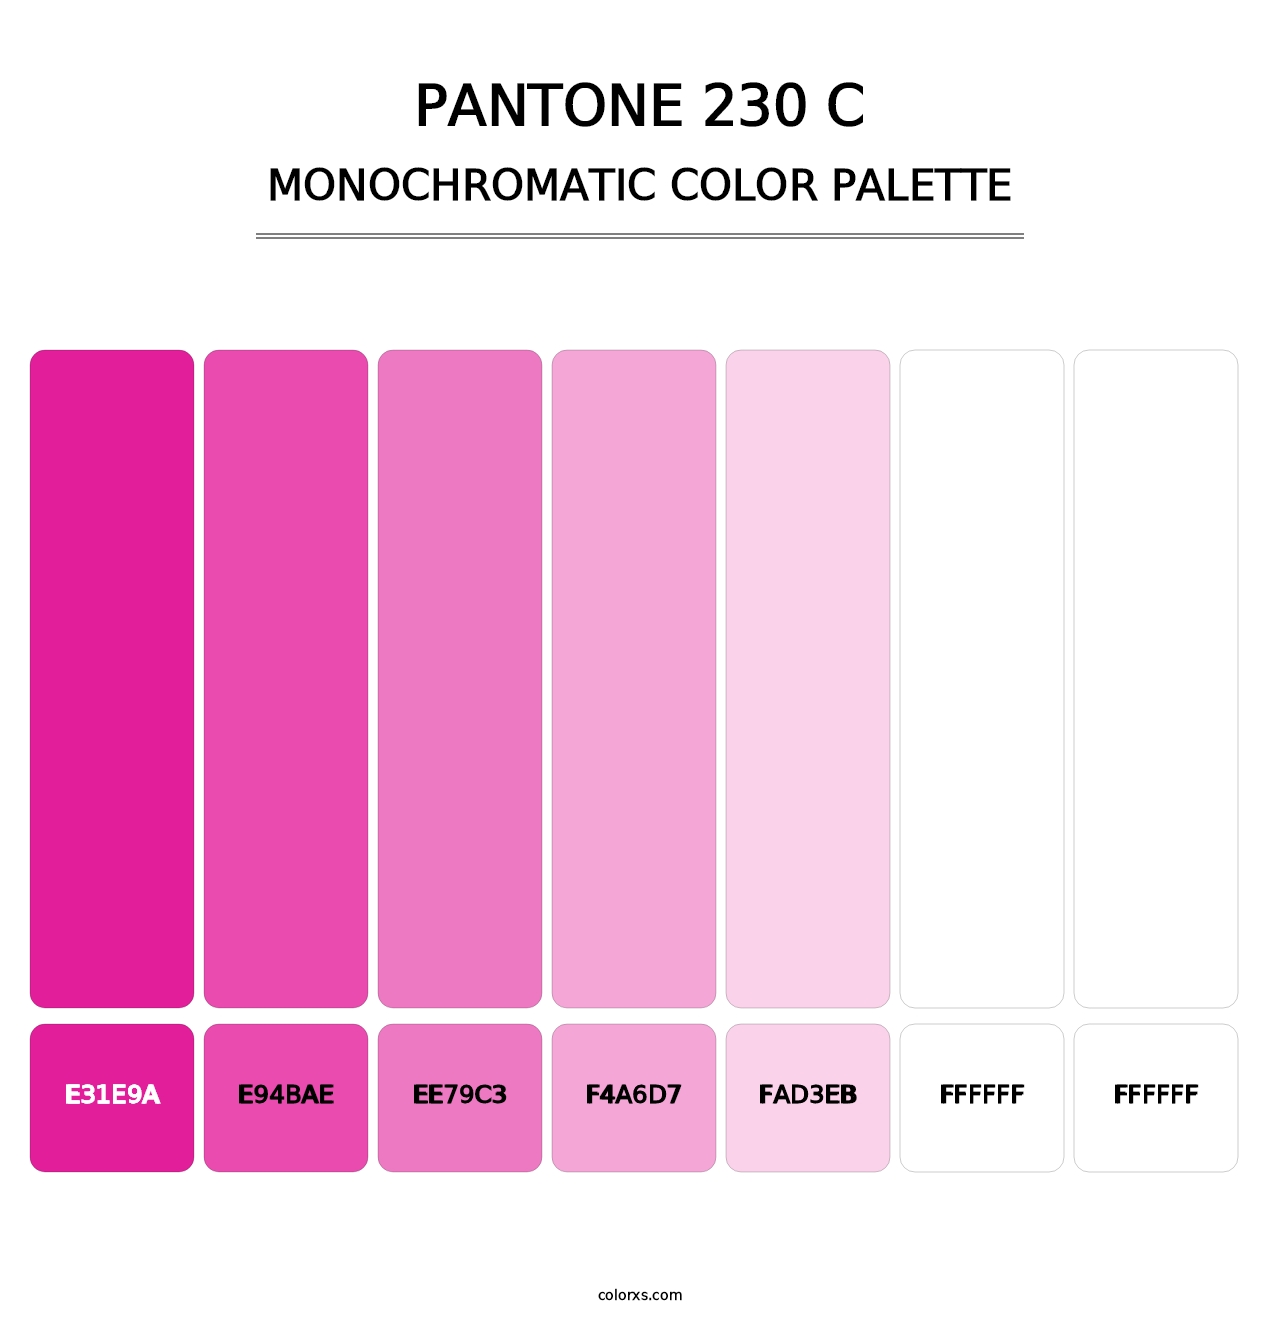 PANTONE 230 C - Monochromatic Color Palette